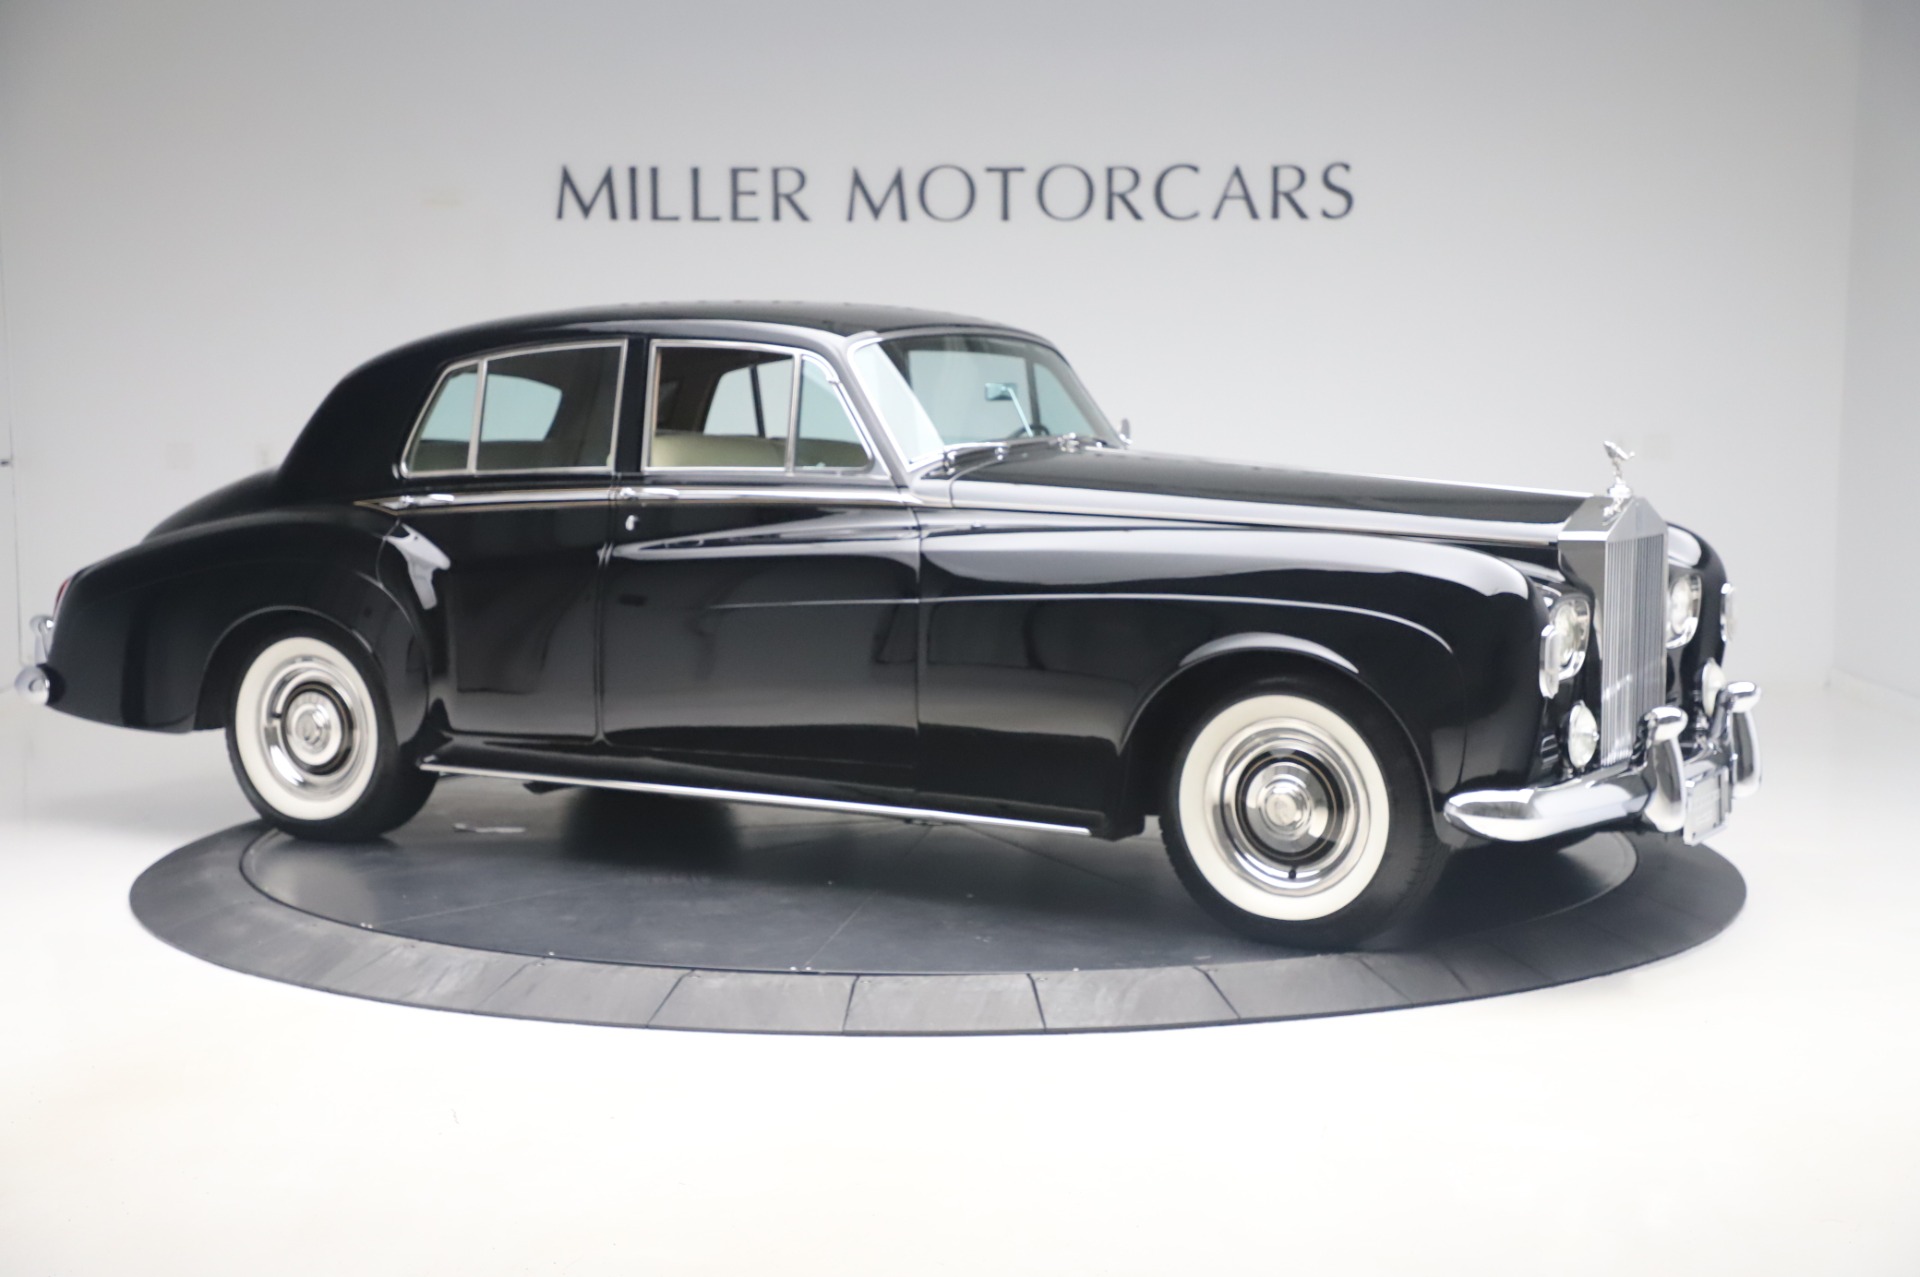 1961 ROLLSROYCE SILVER CLOUD II LONG WHEELBASE  Daniel Schmitt  Co  Classic Car Gallery